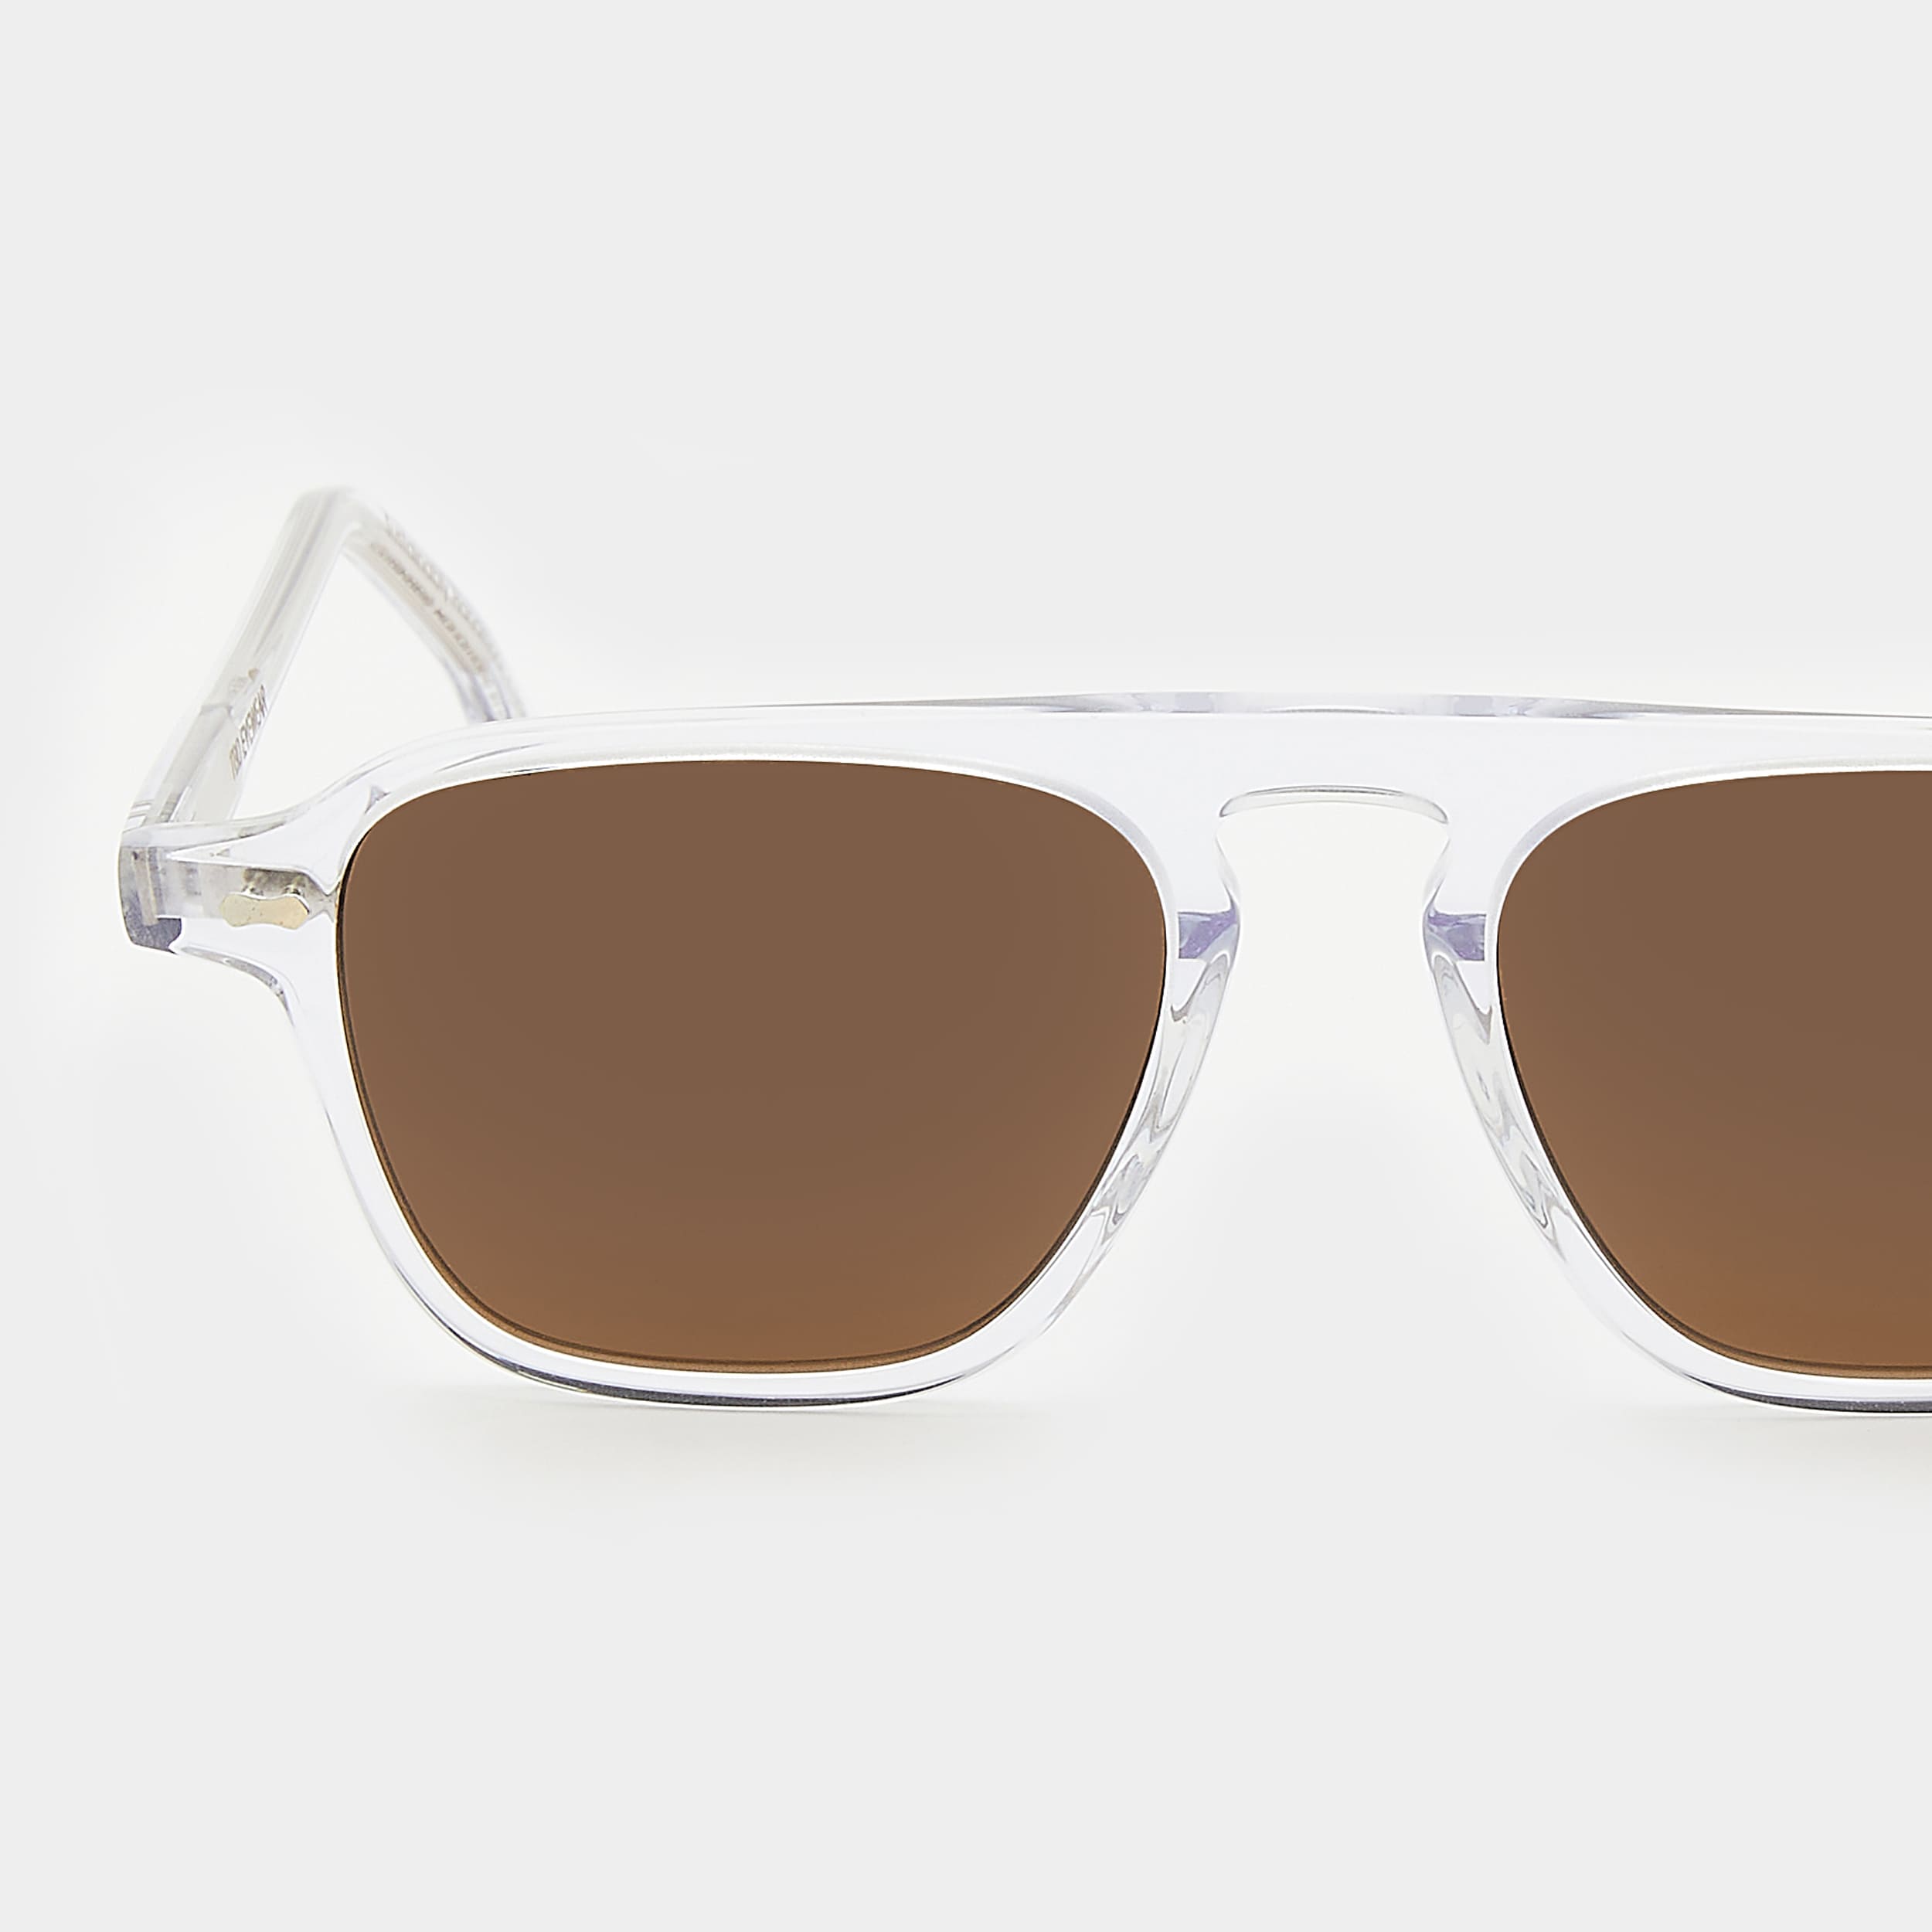 sunglasses-panama-eco-transparent-tobacco-sustainable-tbd-eyewear-lens